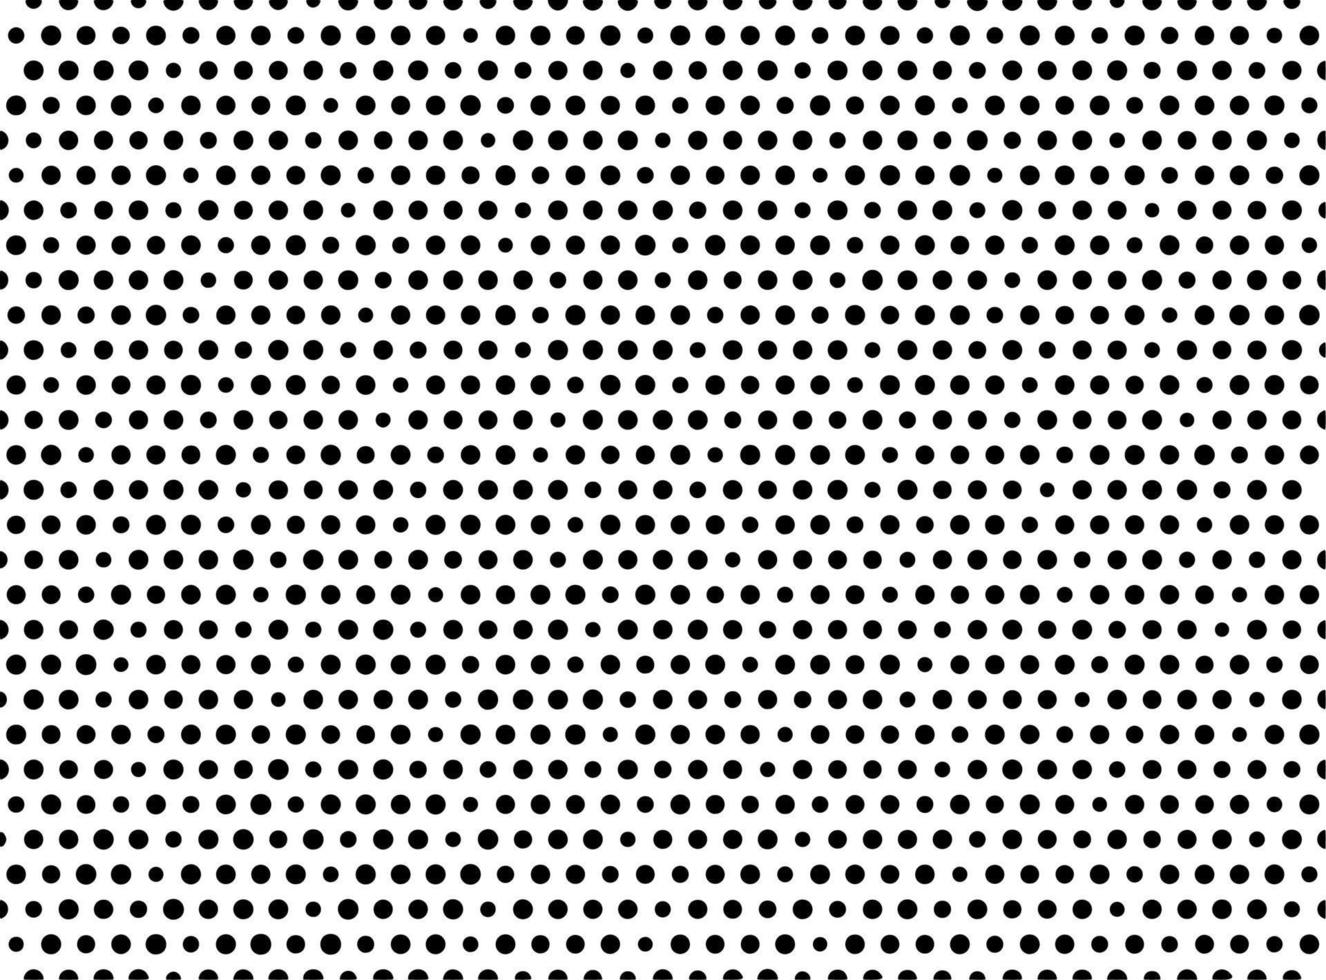 vector van halftone patroon achtergrond